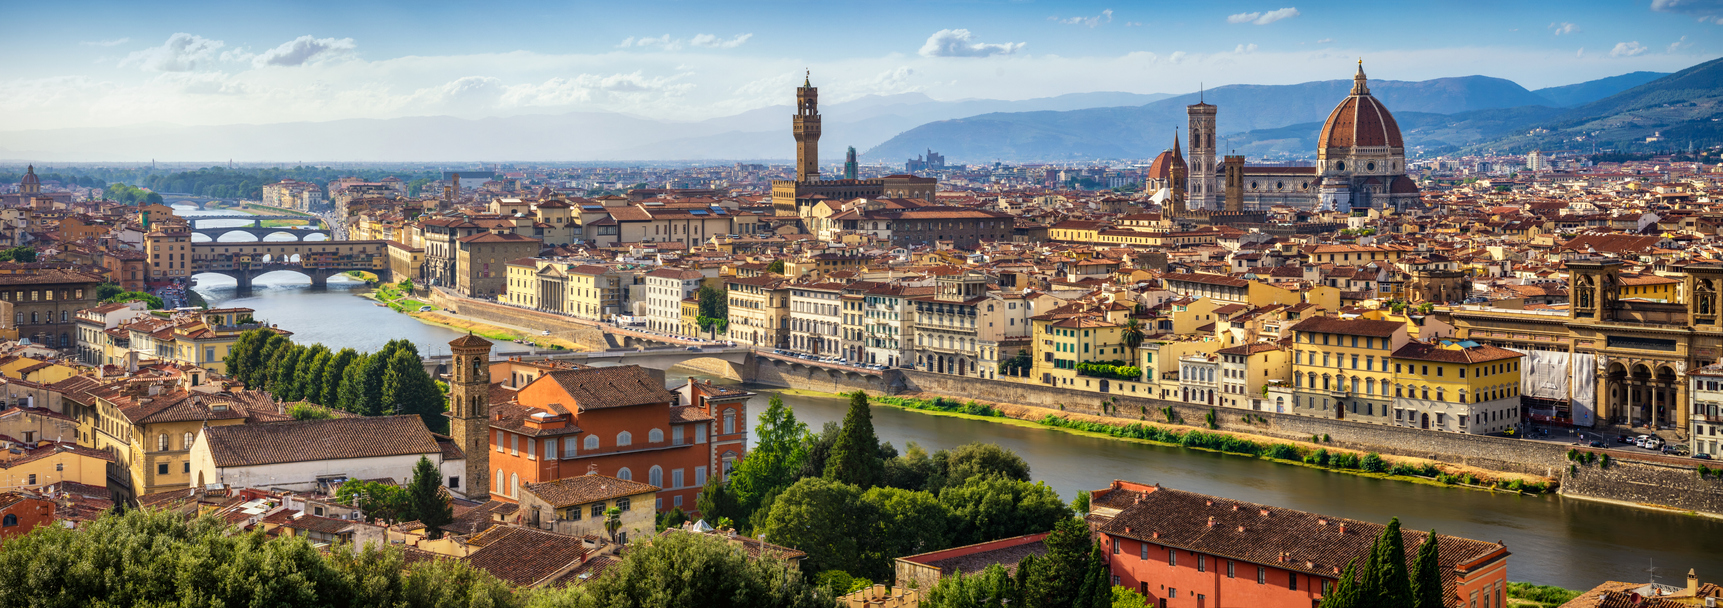 Vista panorâmica de Florença (Itália), com a ponte Vecchio ao fundo (à es.) e  a igreja de Santa Maria del Fiore (à dir,)